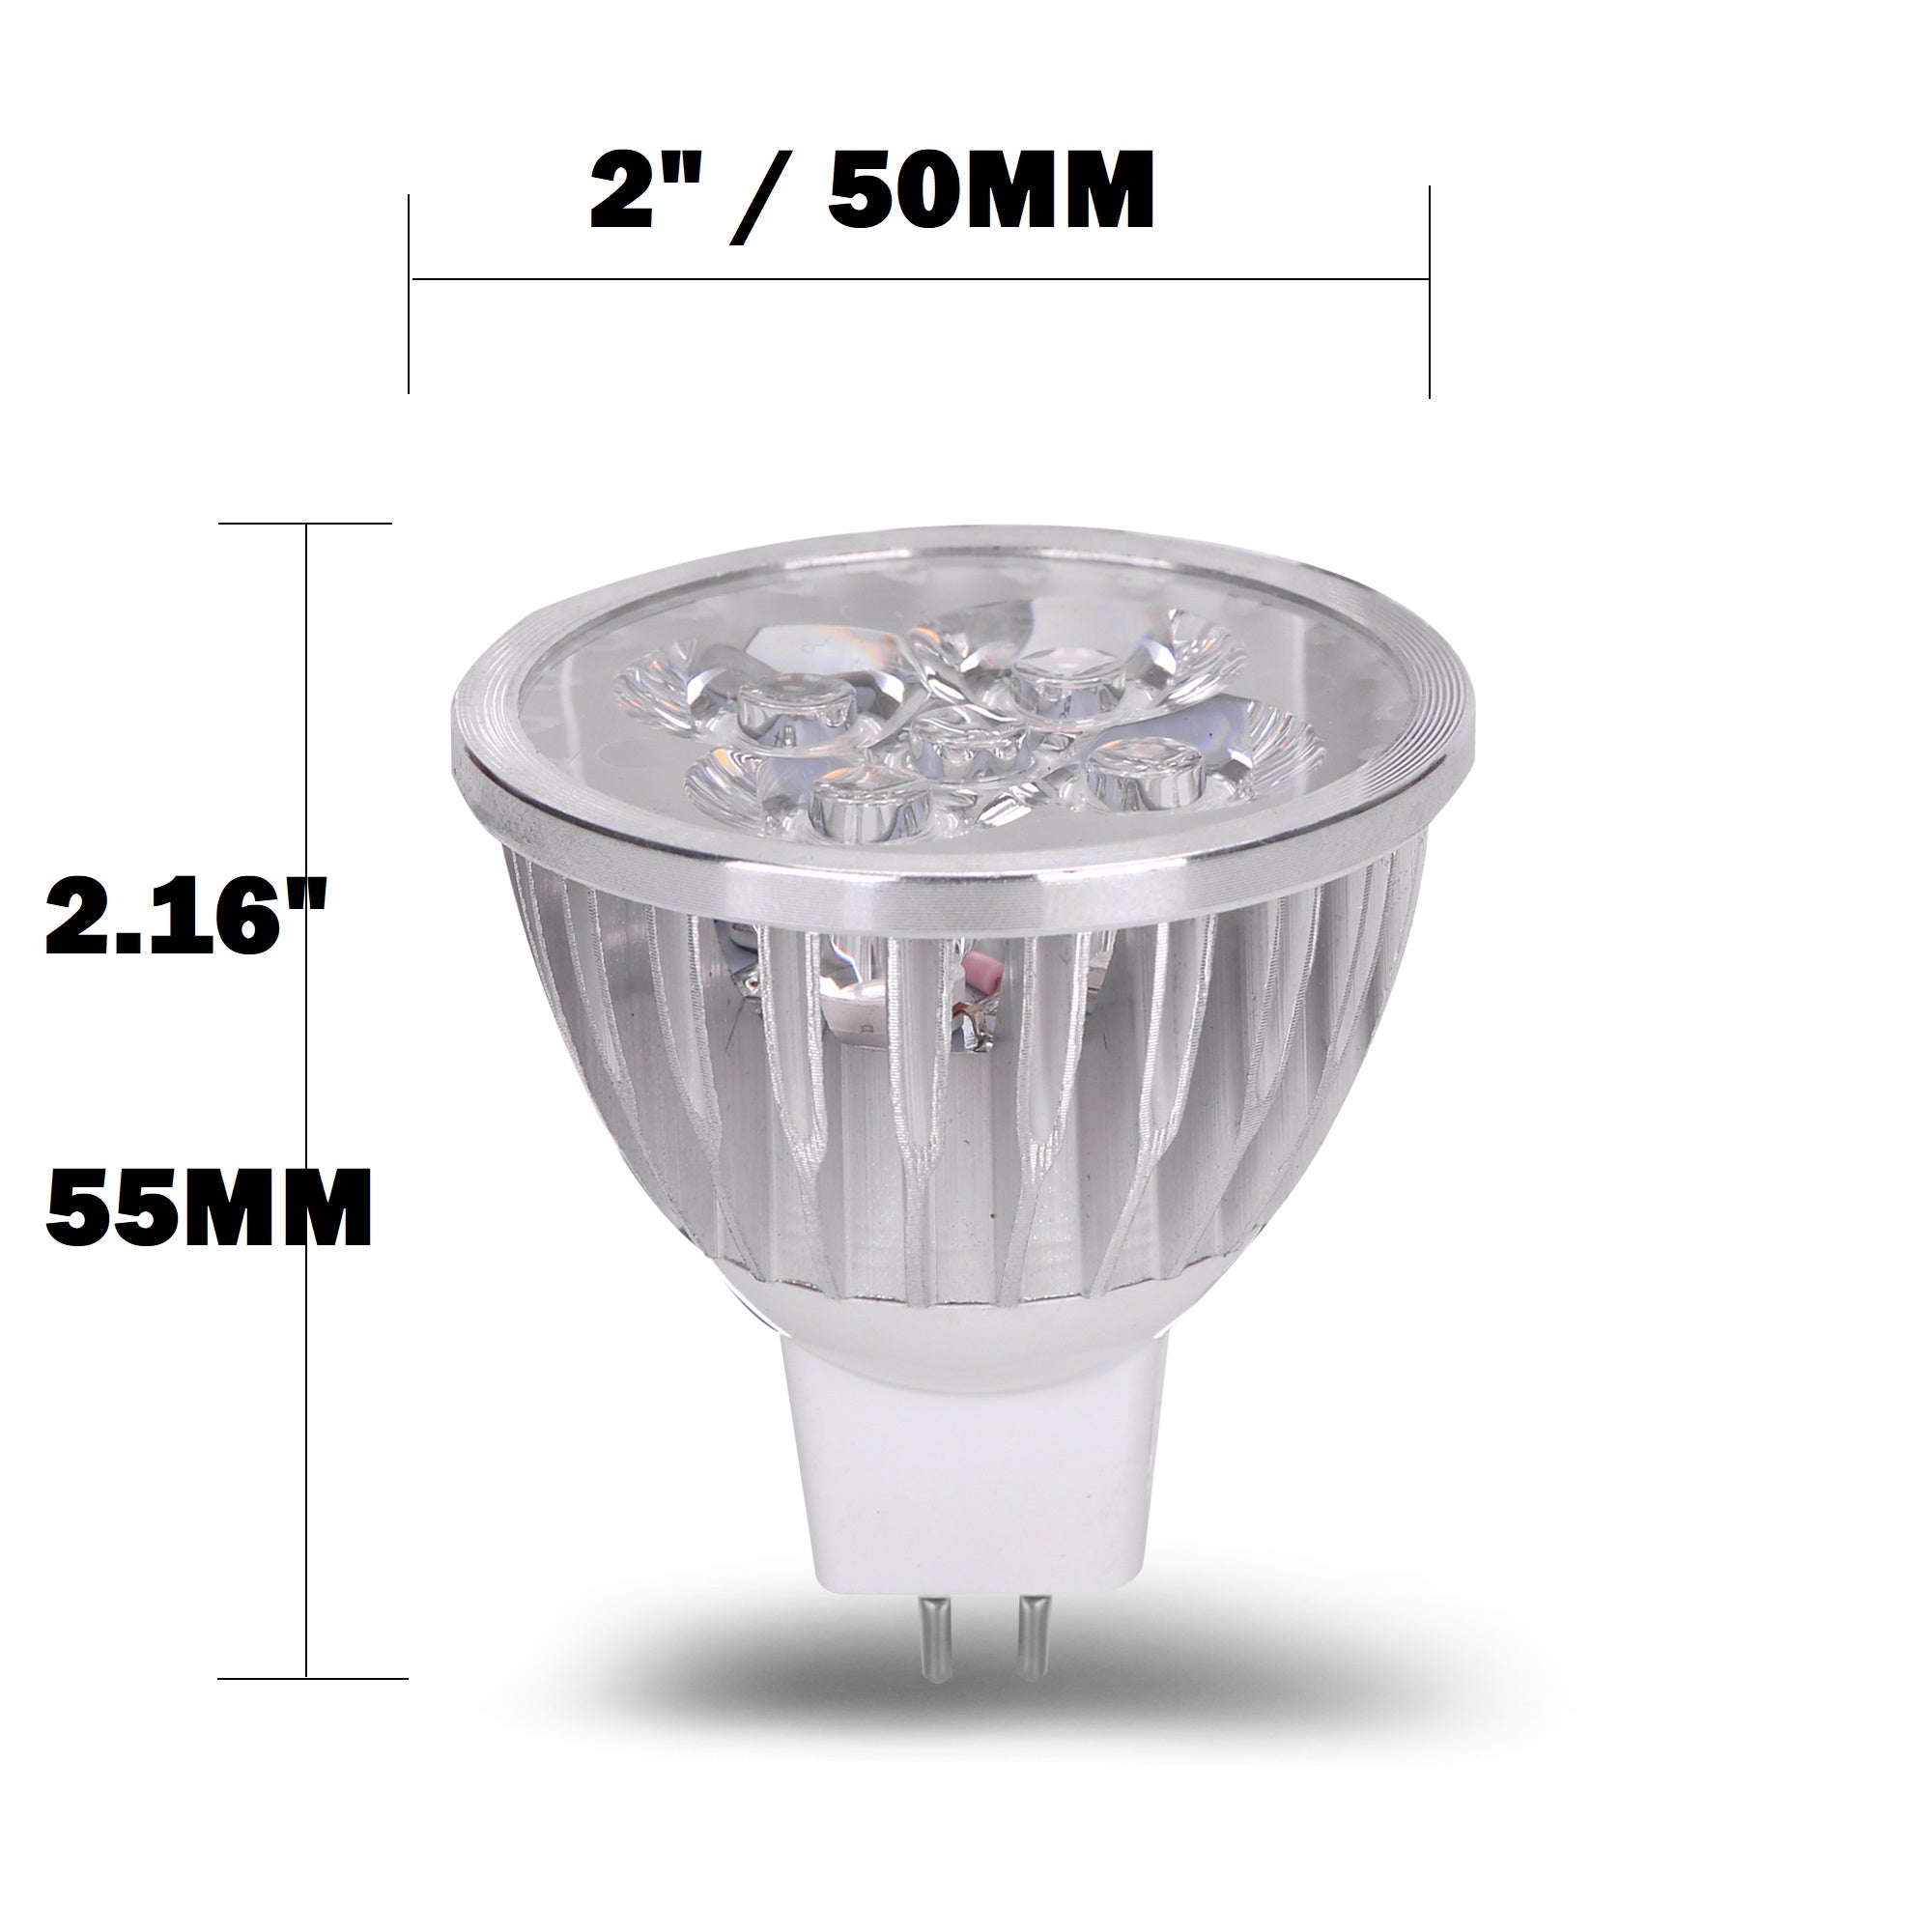 Volt 4 Watt LED Light Spot MR16 GU5.3 Bi Pin Track Lamp - 12VMonster Lighting